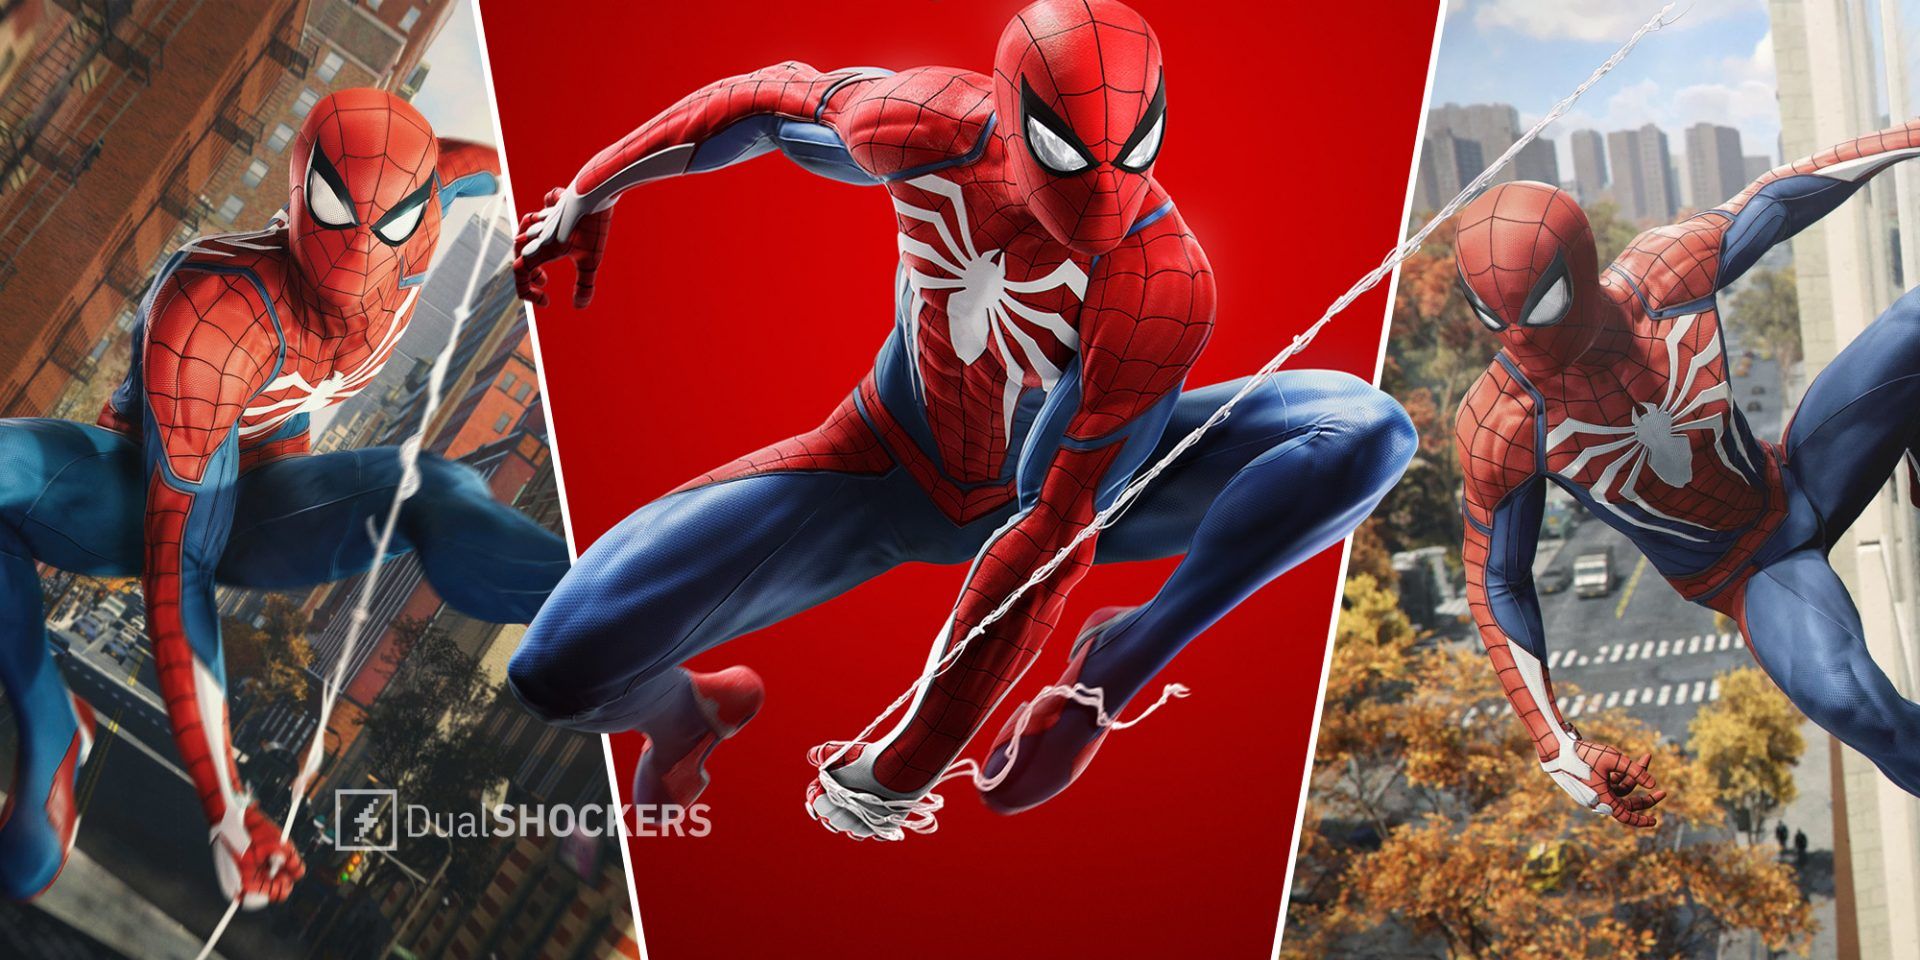 Marvel's Spider-Man Remastered já Disponível para PC com NVIDIA DLSS, DLAA,  Ray Tracing e Muito Mais, Notícias GeForce